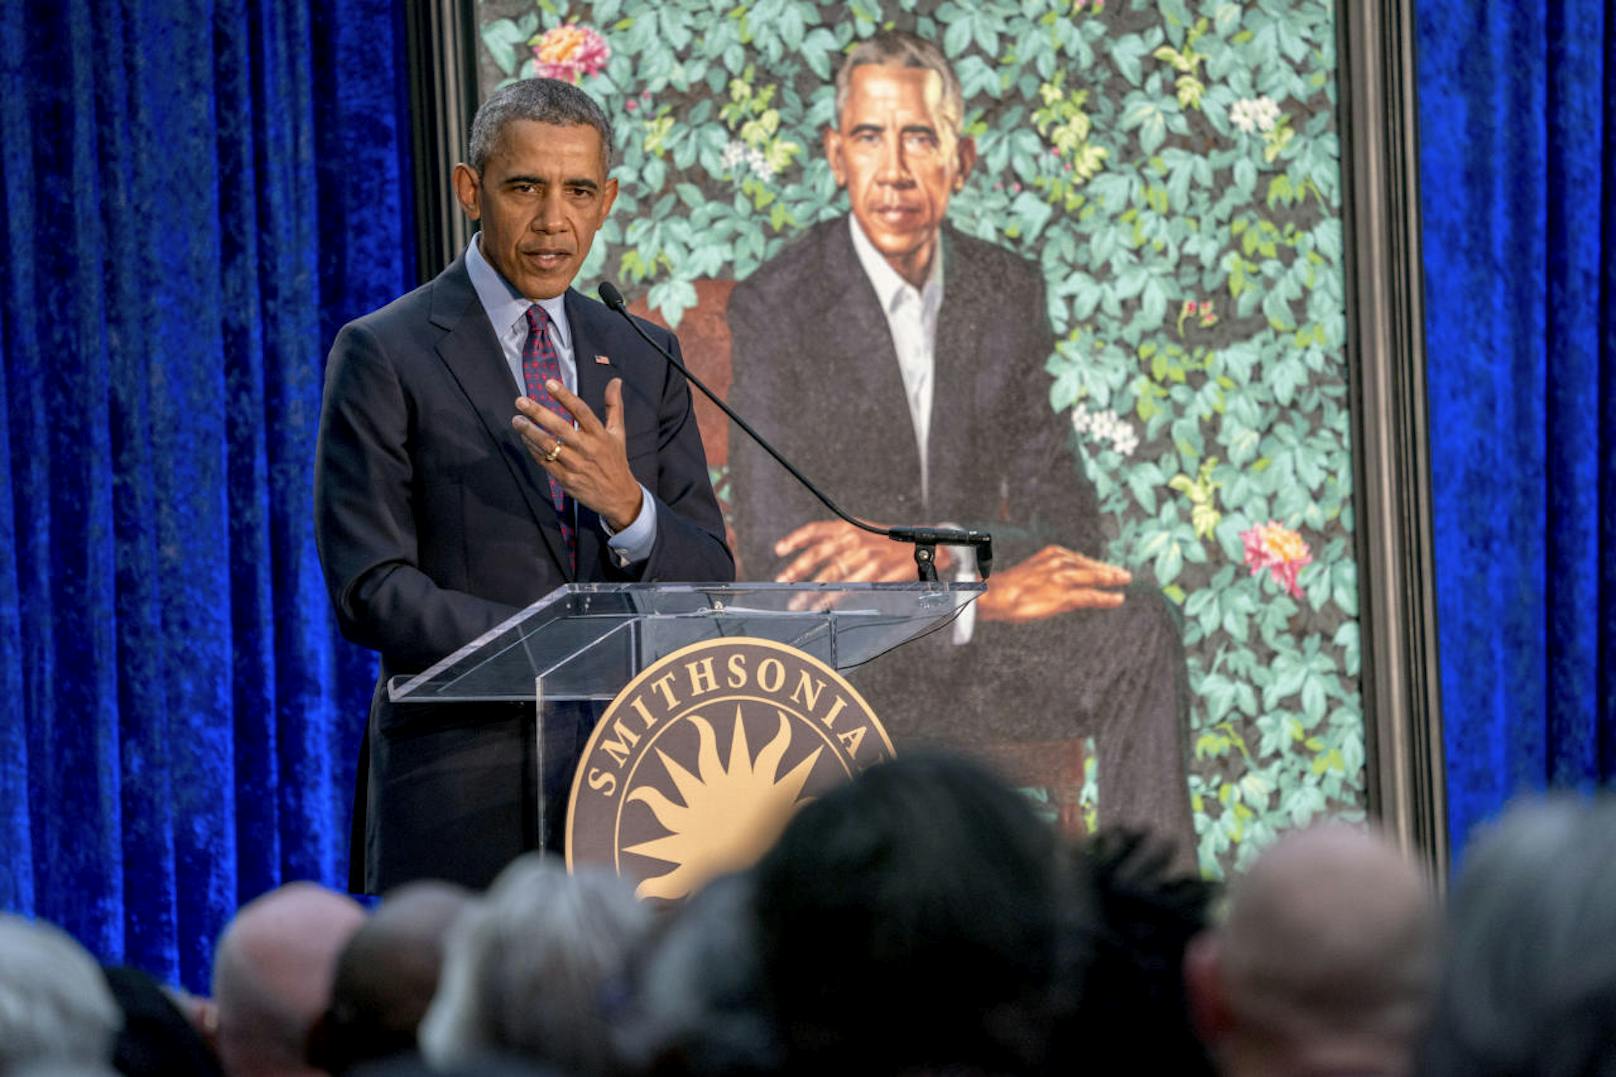 13.02.2018: Das offizielle Gemälde von Barack Obama sorgt für Spott und Lob. "Das ist Sympbolismus" vs. "Was soll das denn sein?" Hauptsache dem Ex-Präsidenten gefällts